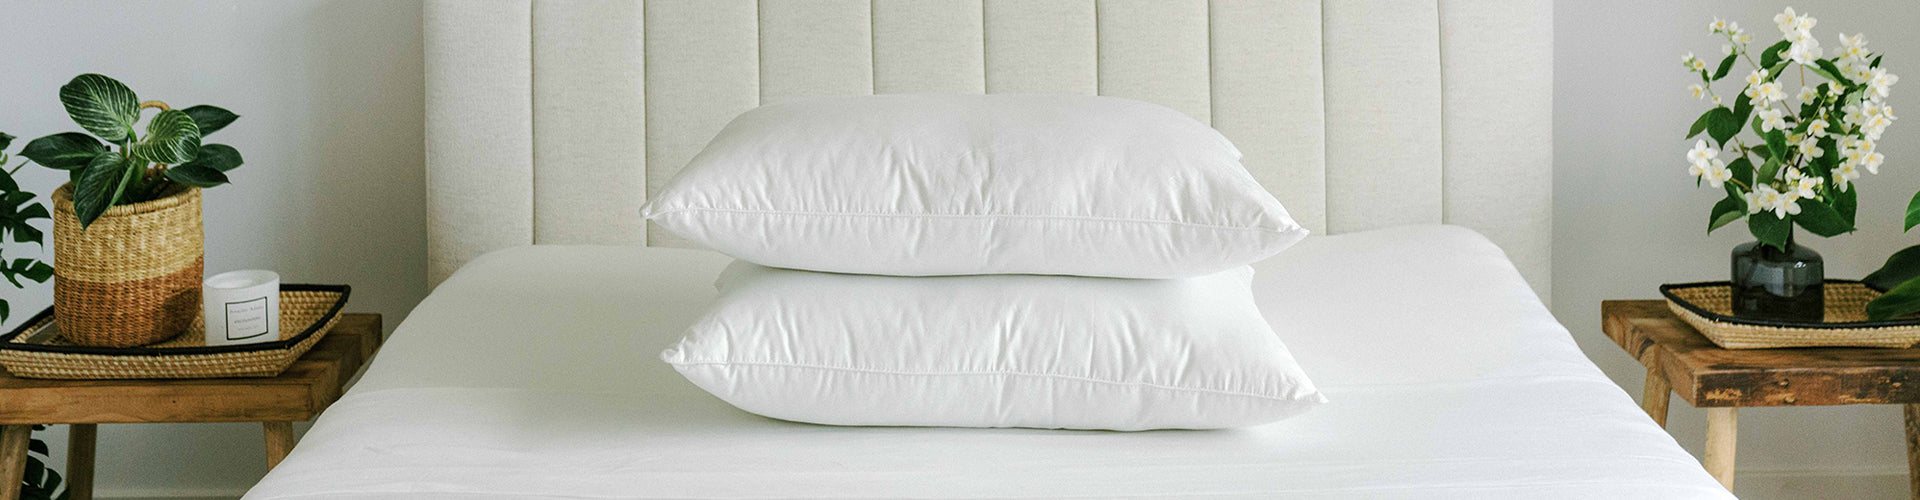 Pillows Standard Size Set of 2, Luxury Velvet Bed Pillows for